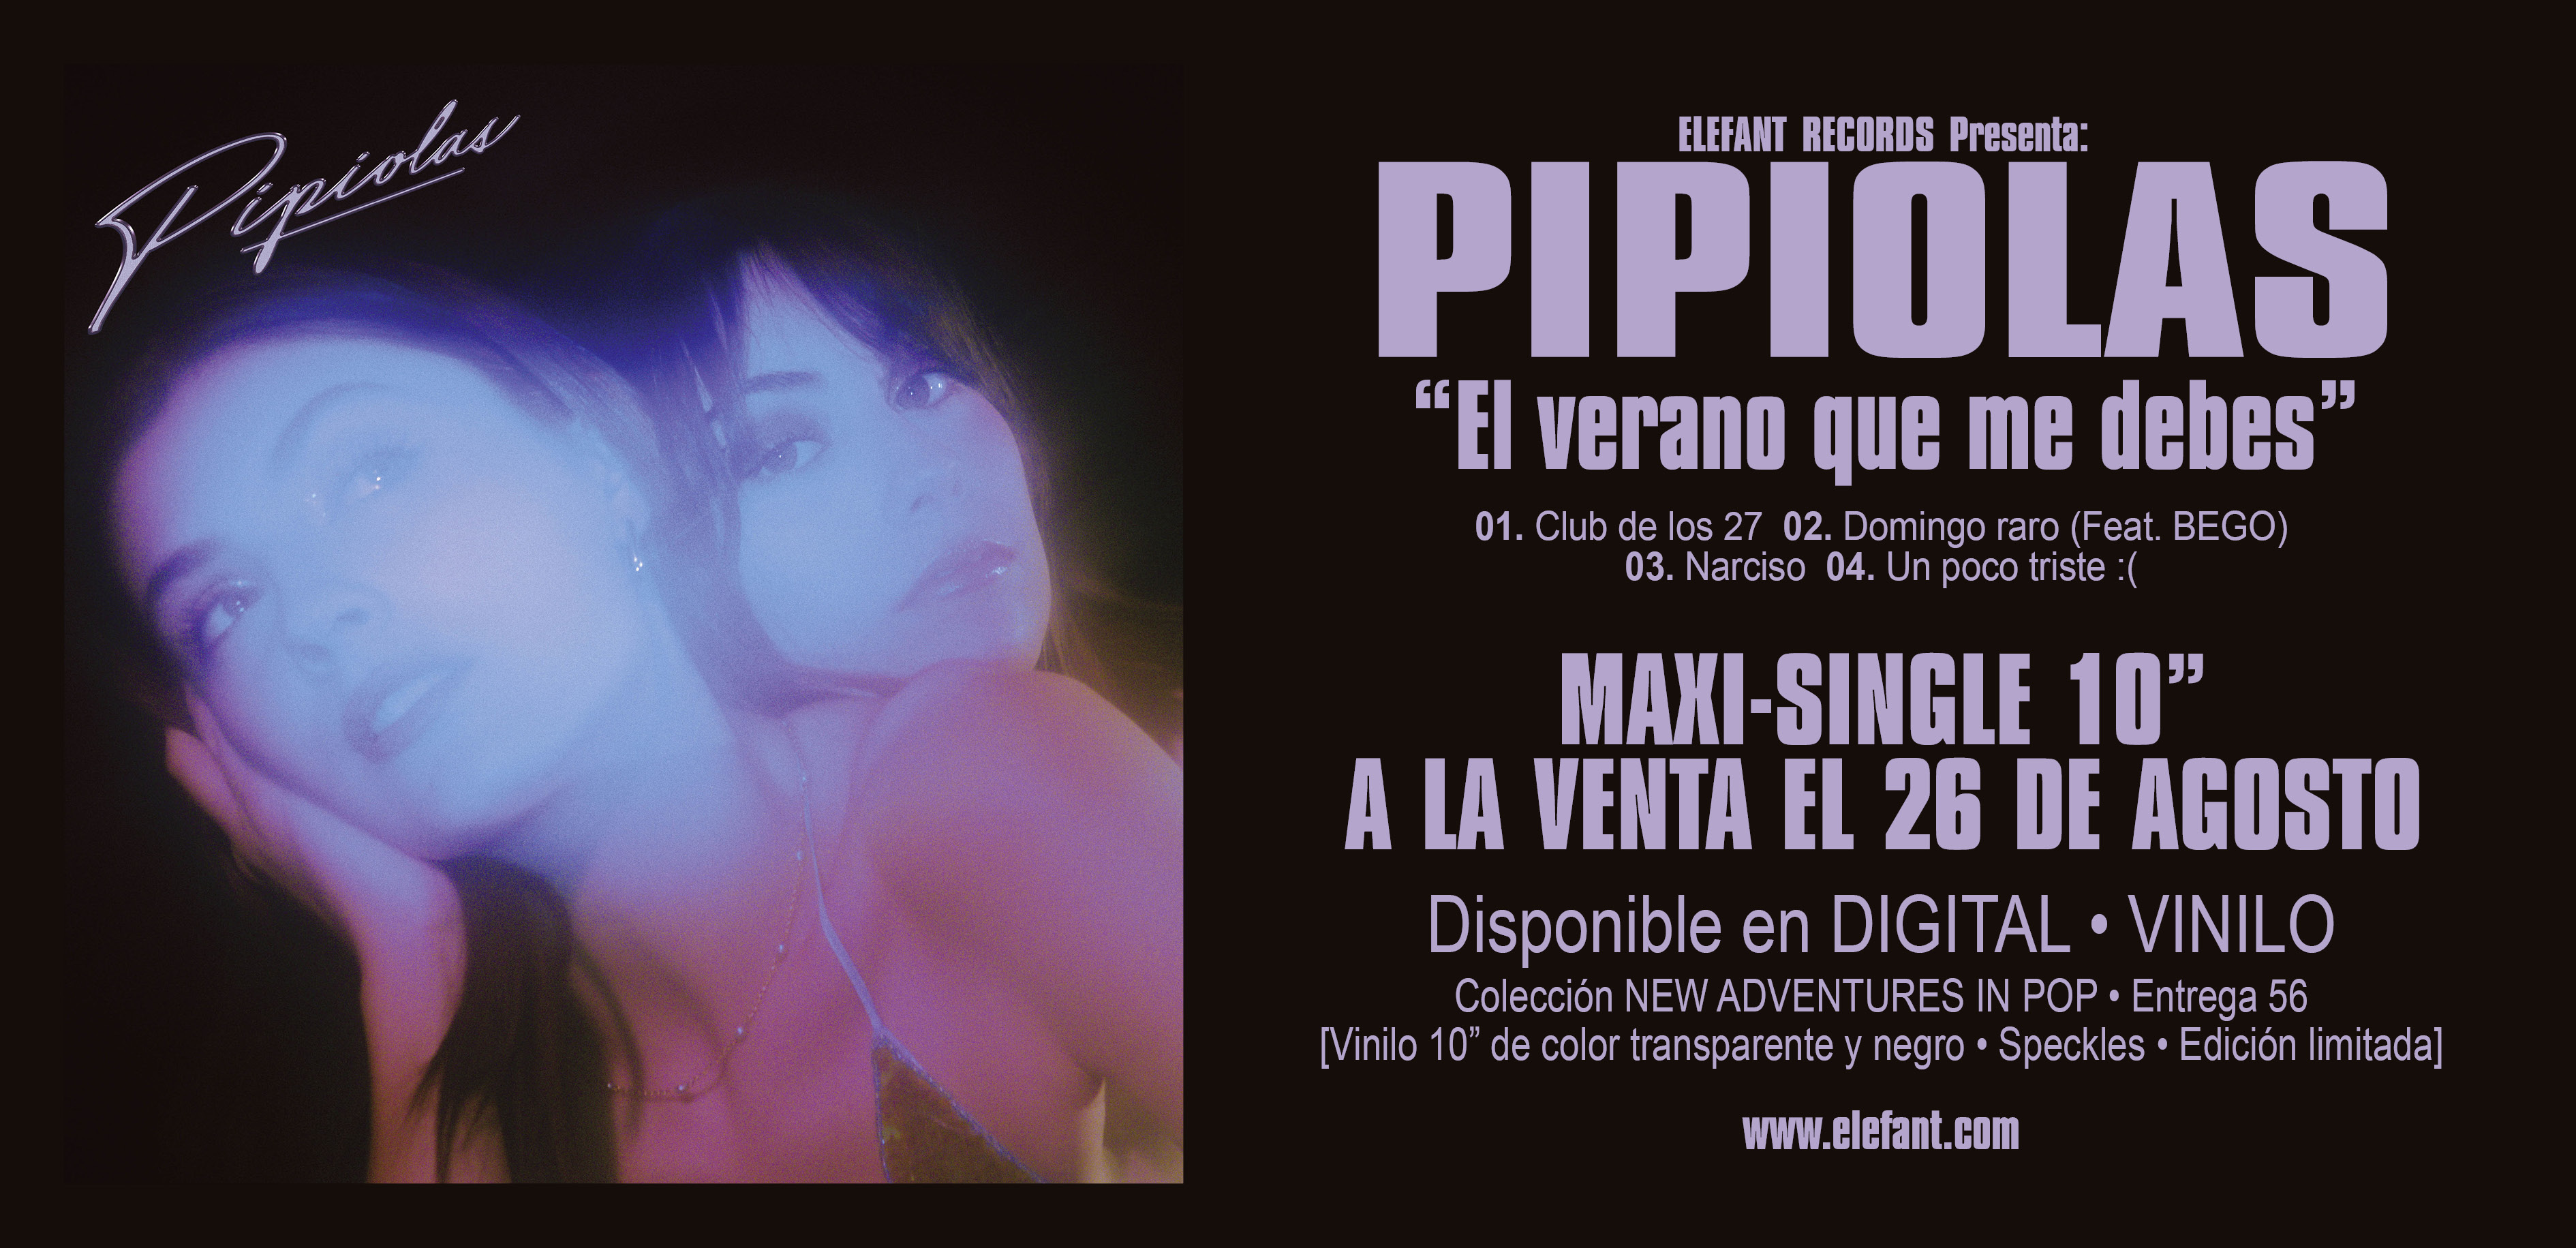 PIPIOLAS "El verano que me debes" Maxi-Single 10" 